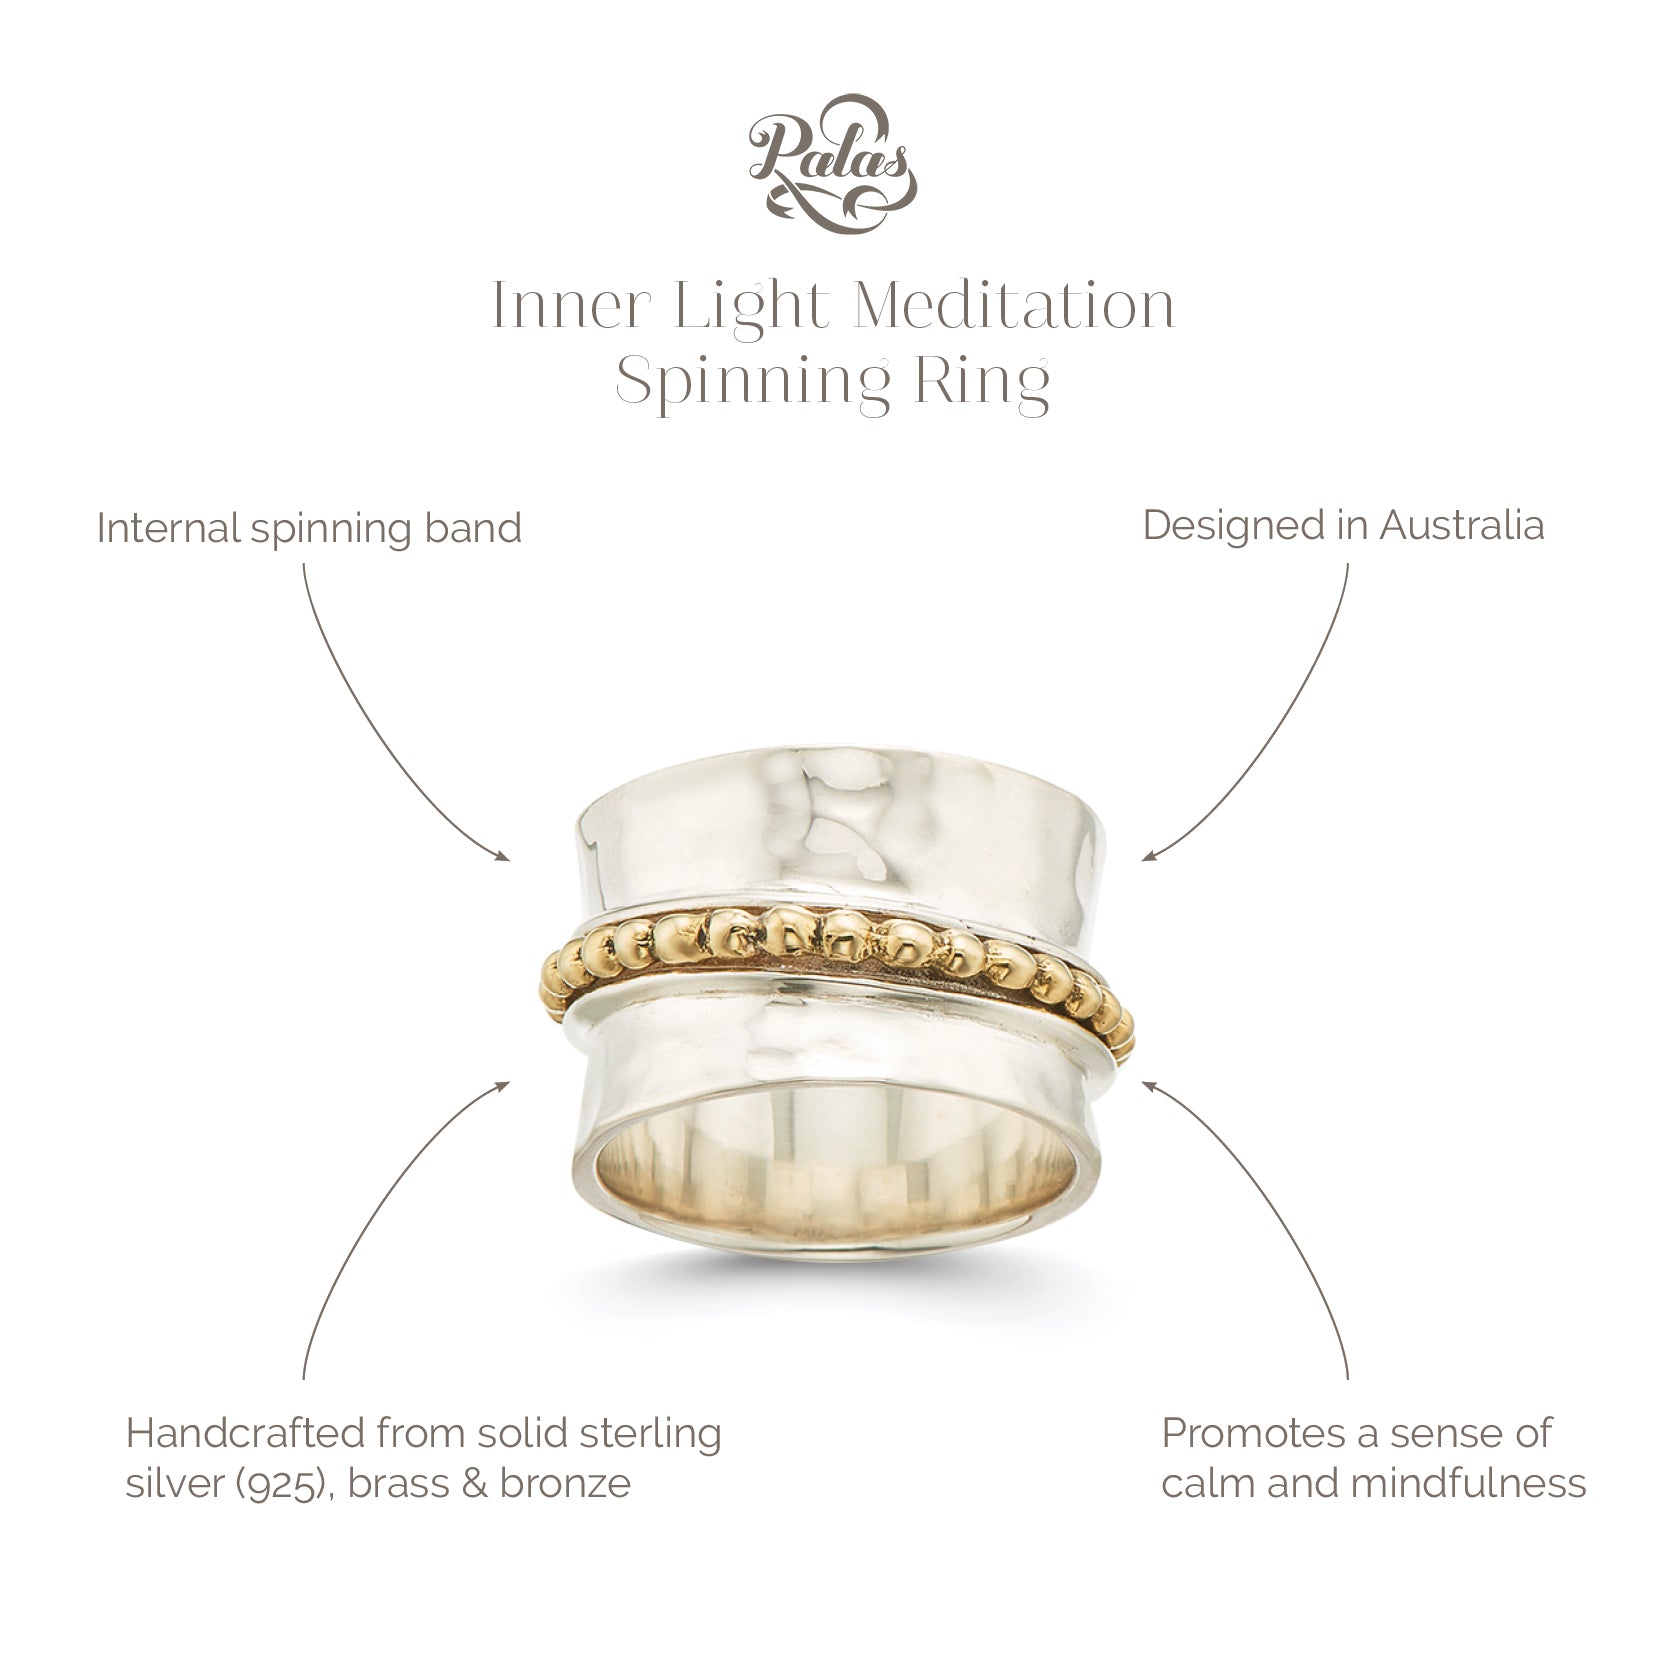 Inner light meditation spinning ring